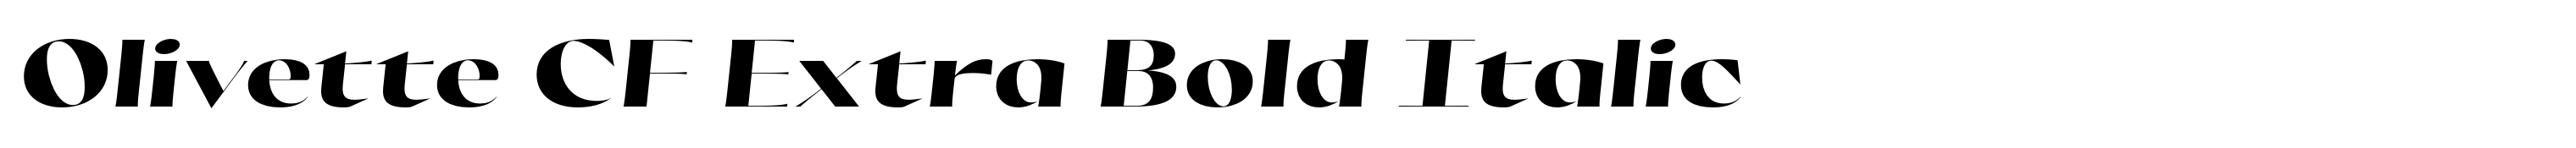 Olivette CF Extra Bold Italic